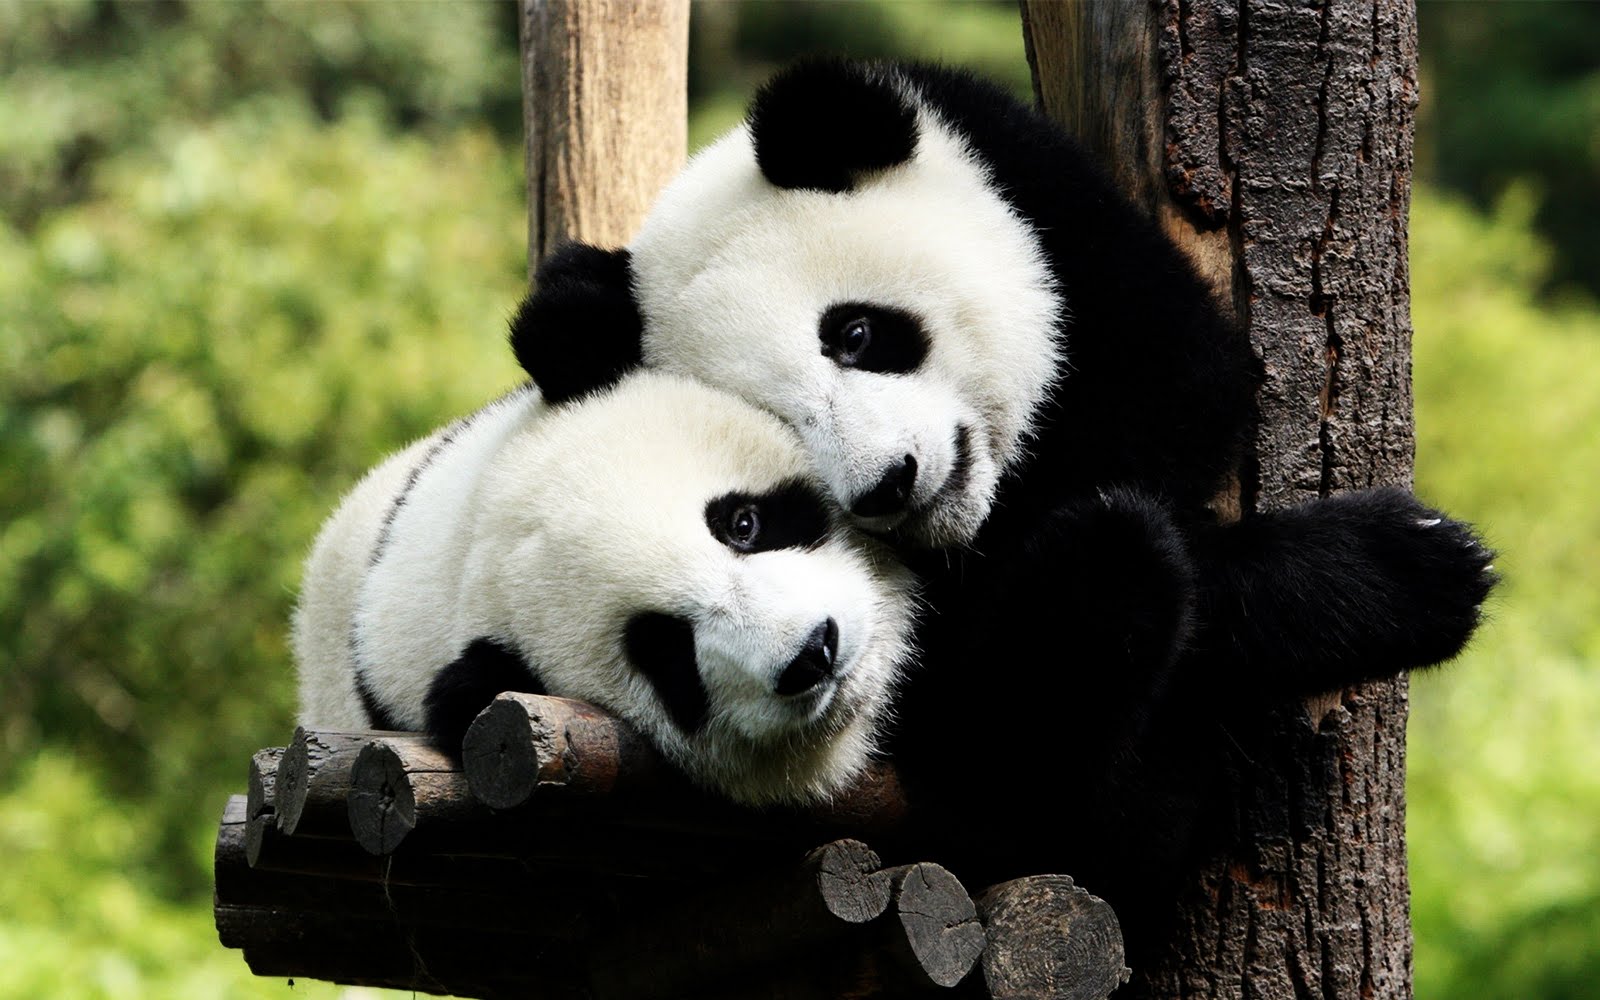 Osos panda enamorados - Panda bears in love